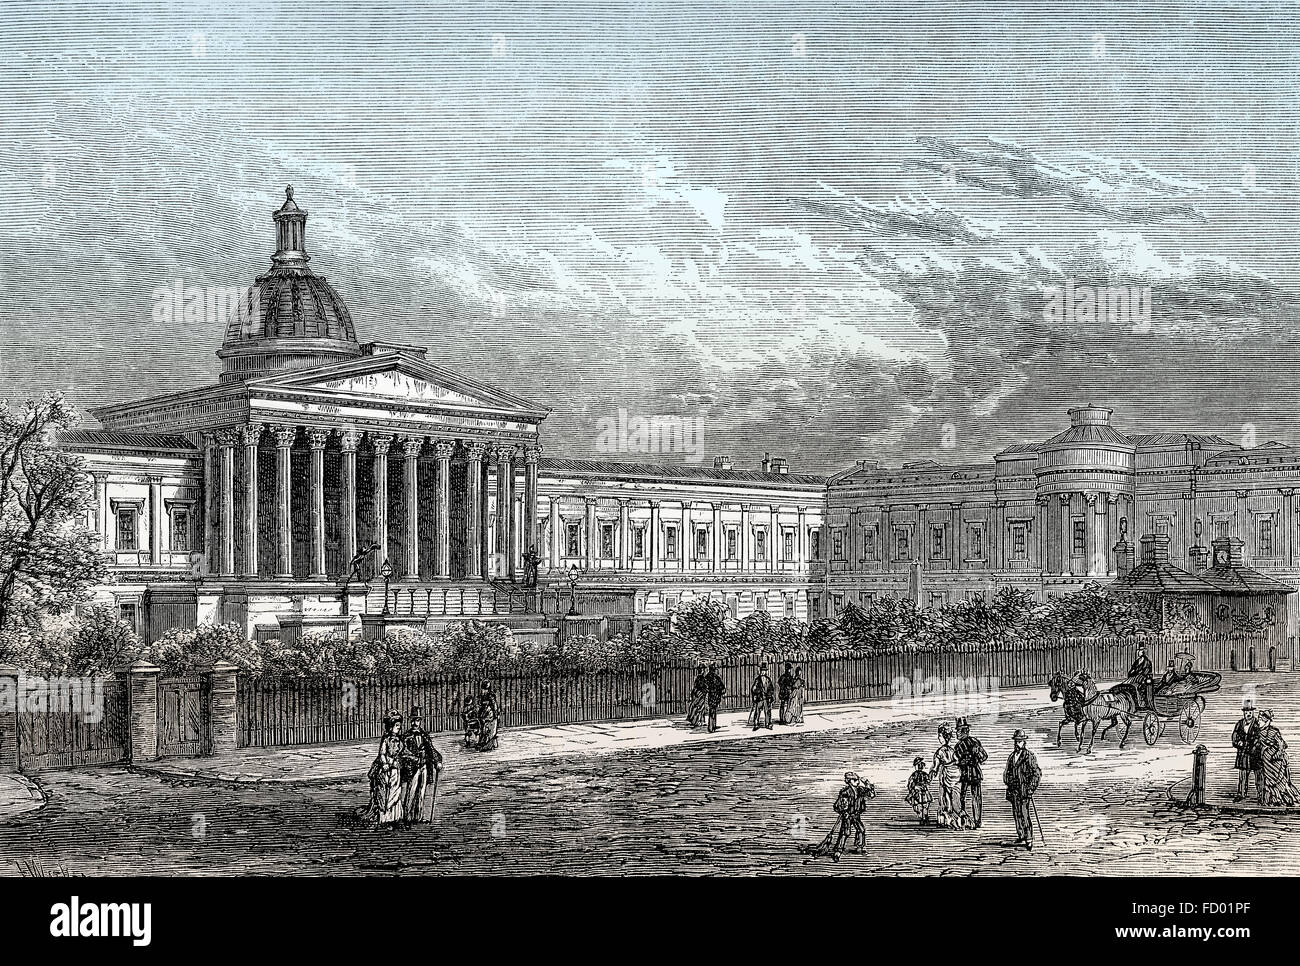 University College London, UCL, 19e siècle, une université de recherche publique à Londres, Angleterre Banque D'Images